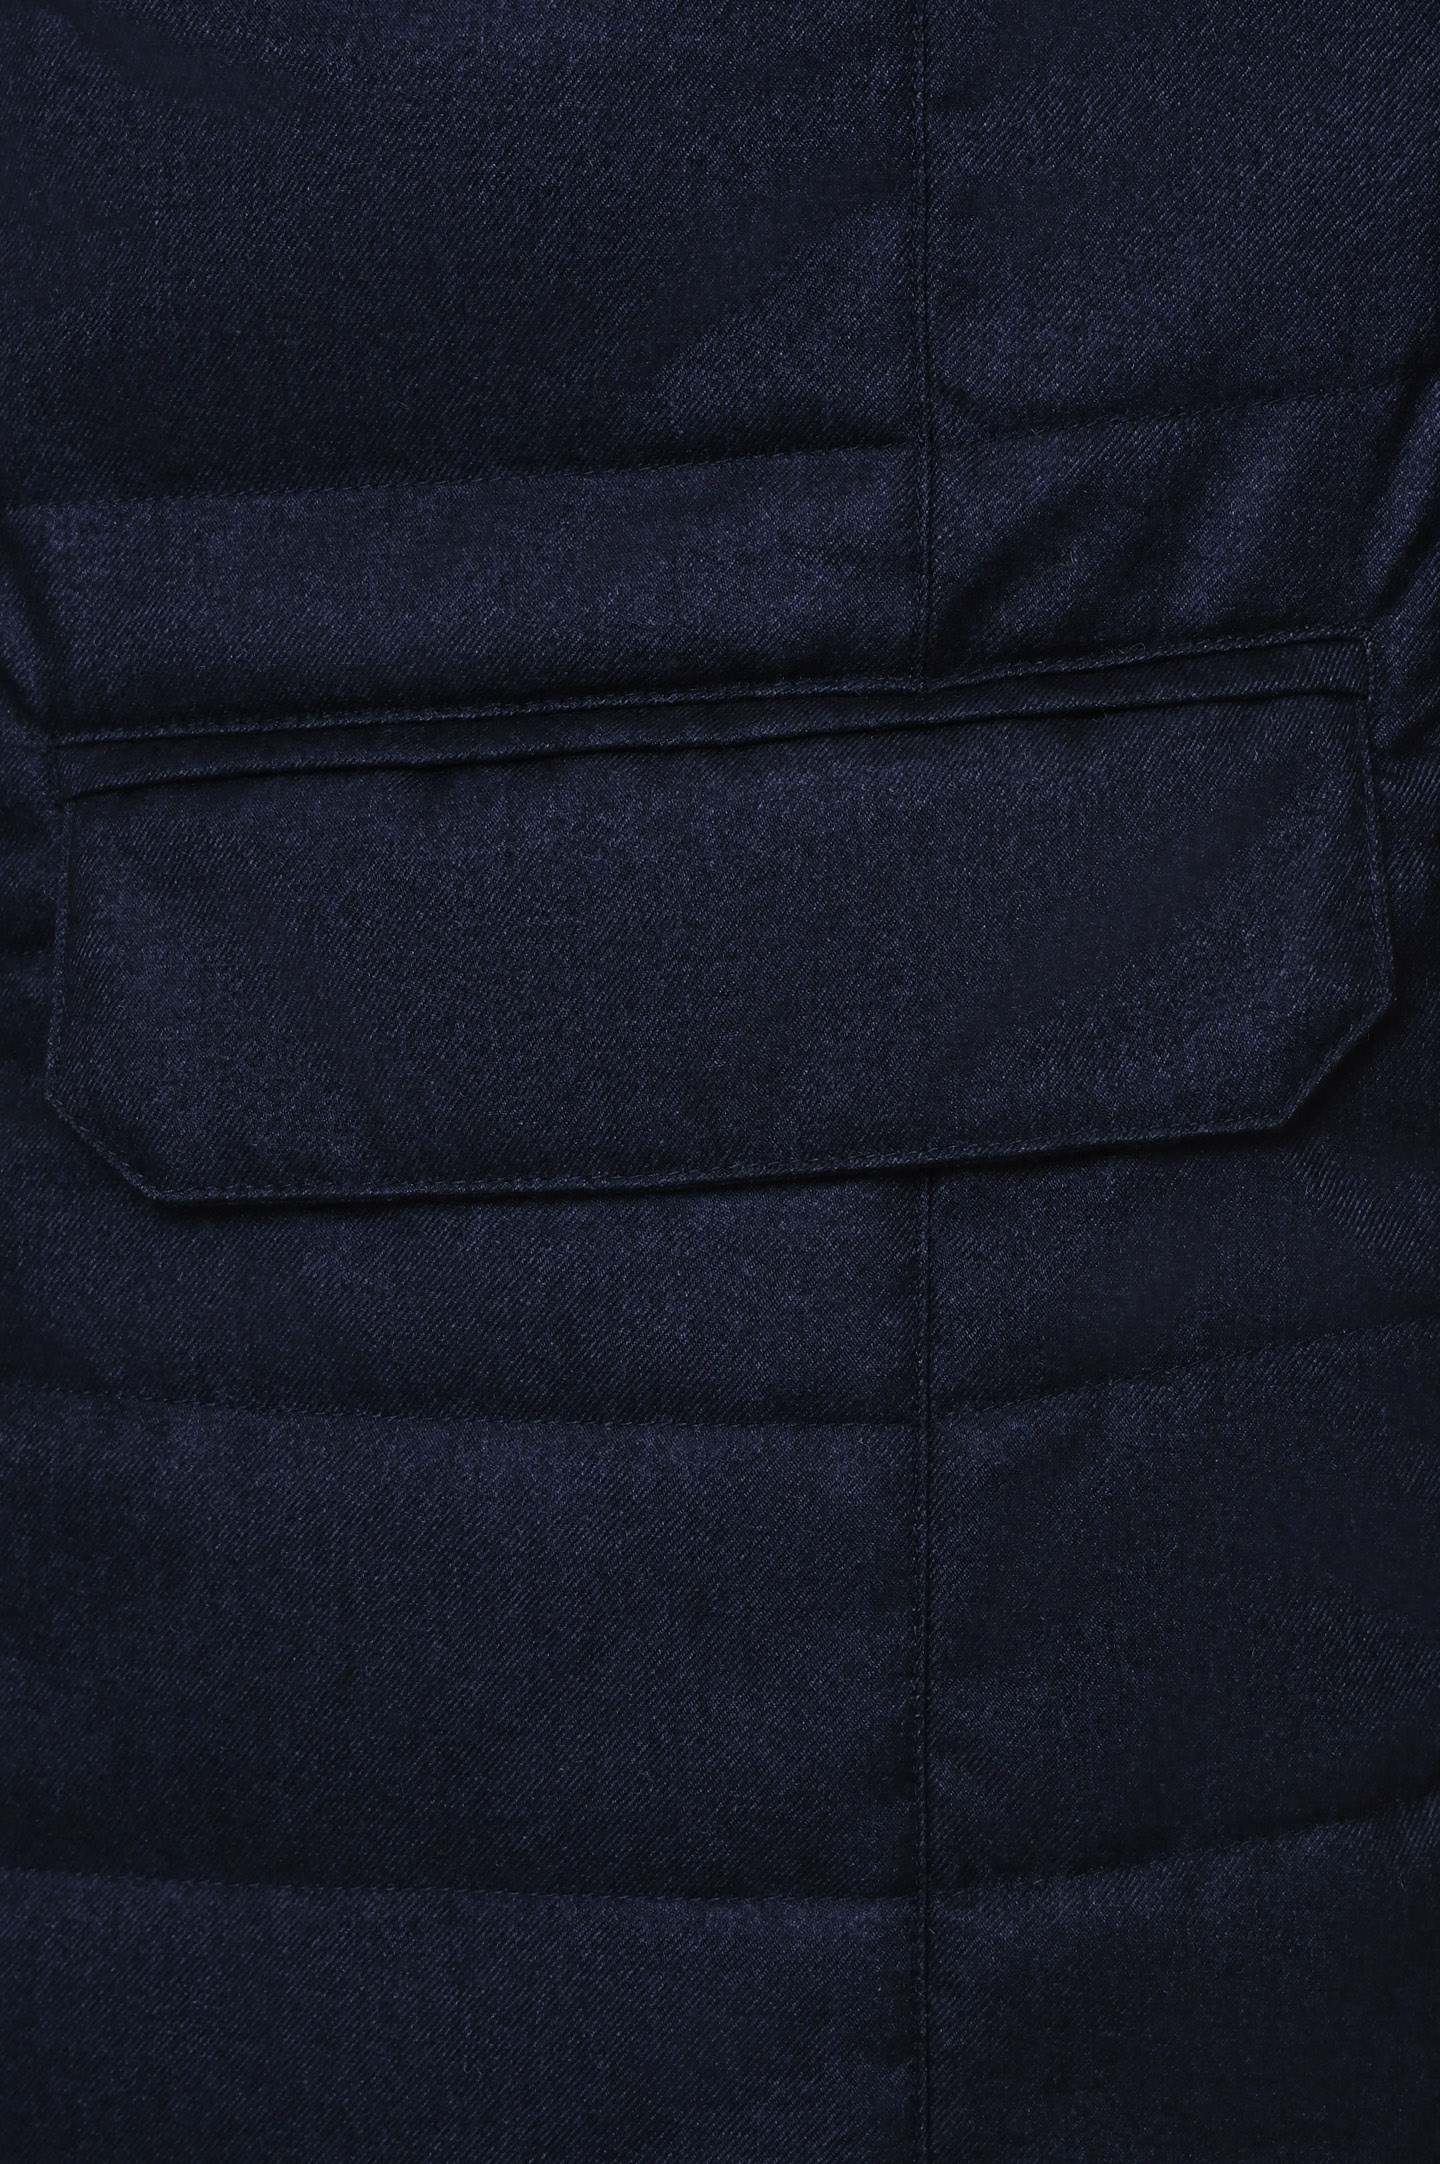 Куртка CANALI SY02202 O30349, цвет: Черный, Мужской